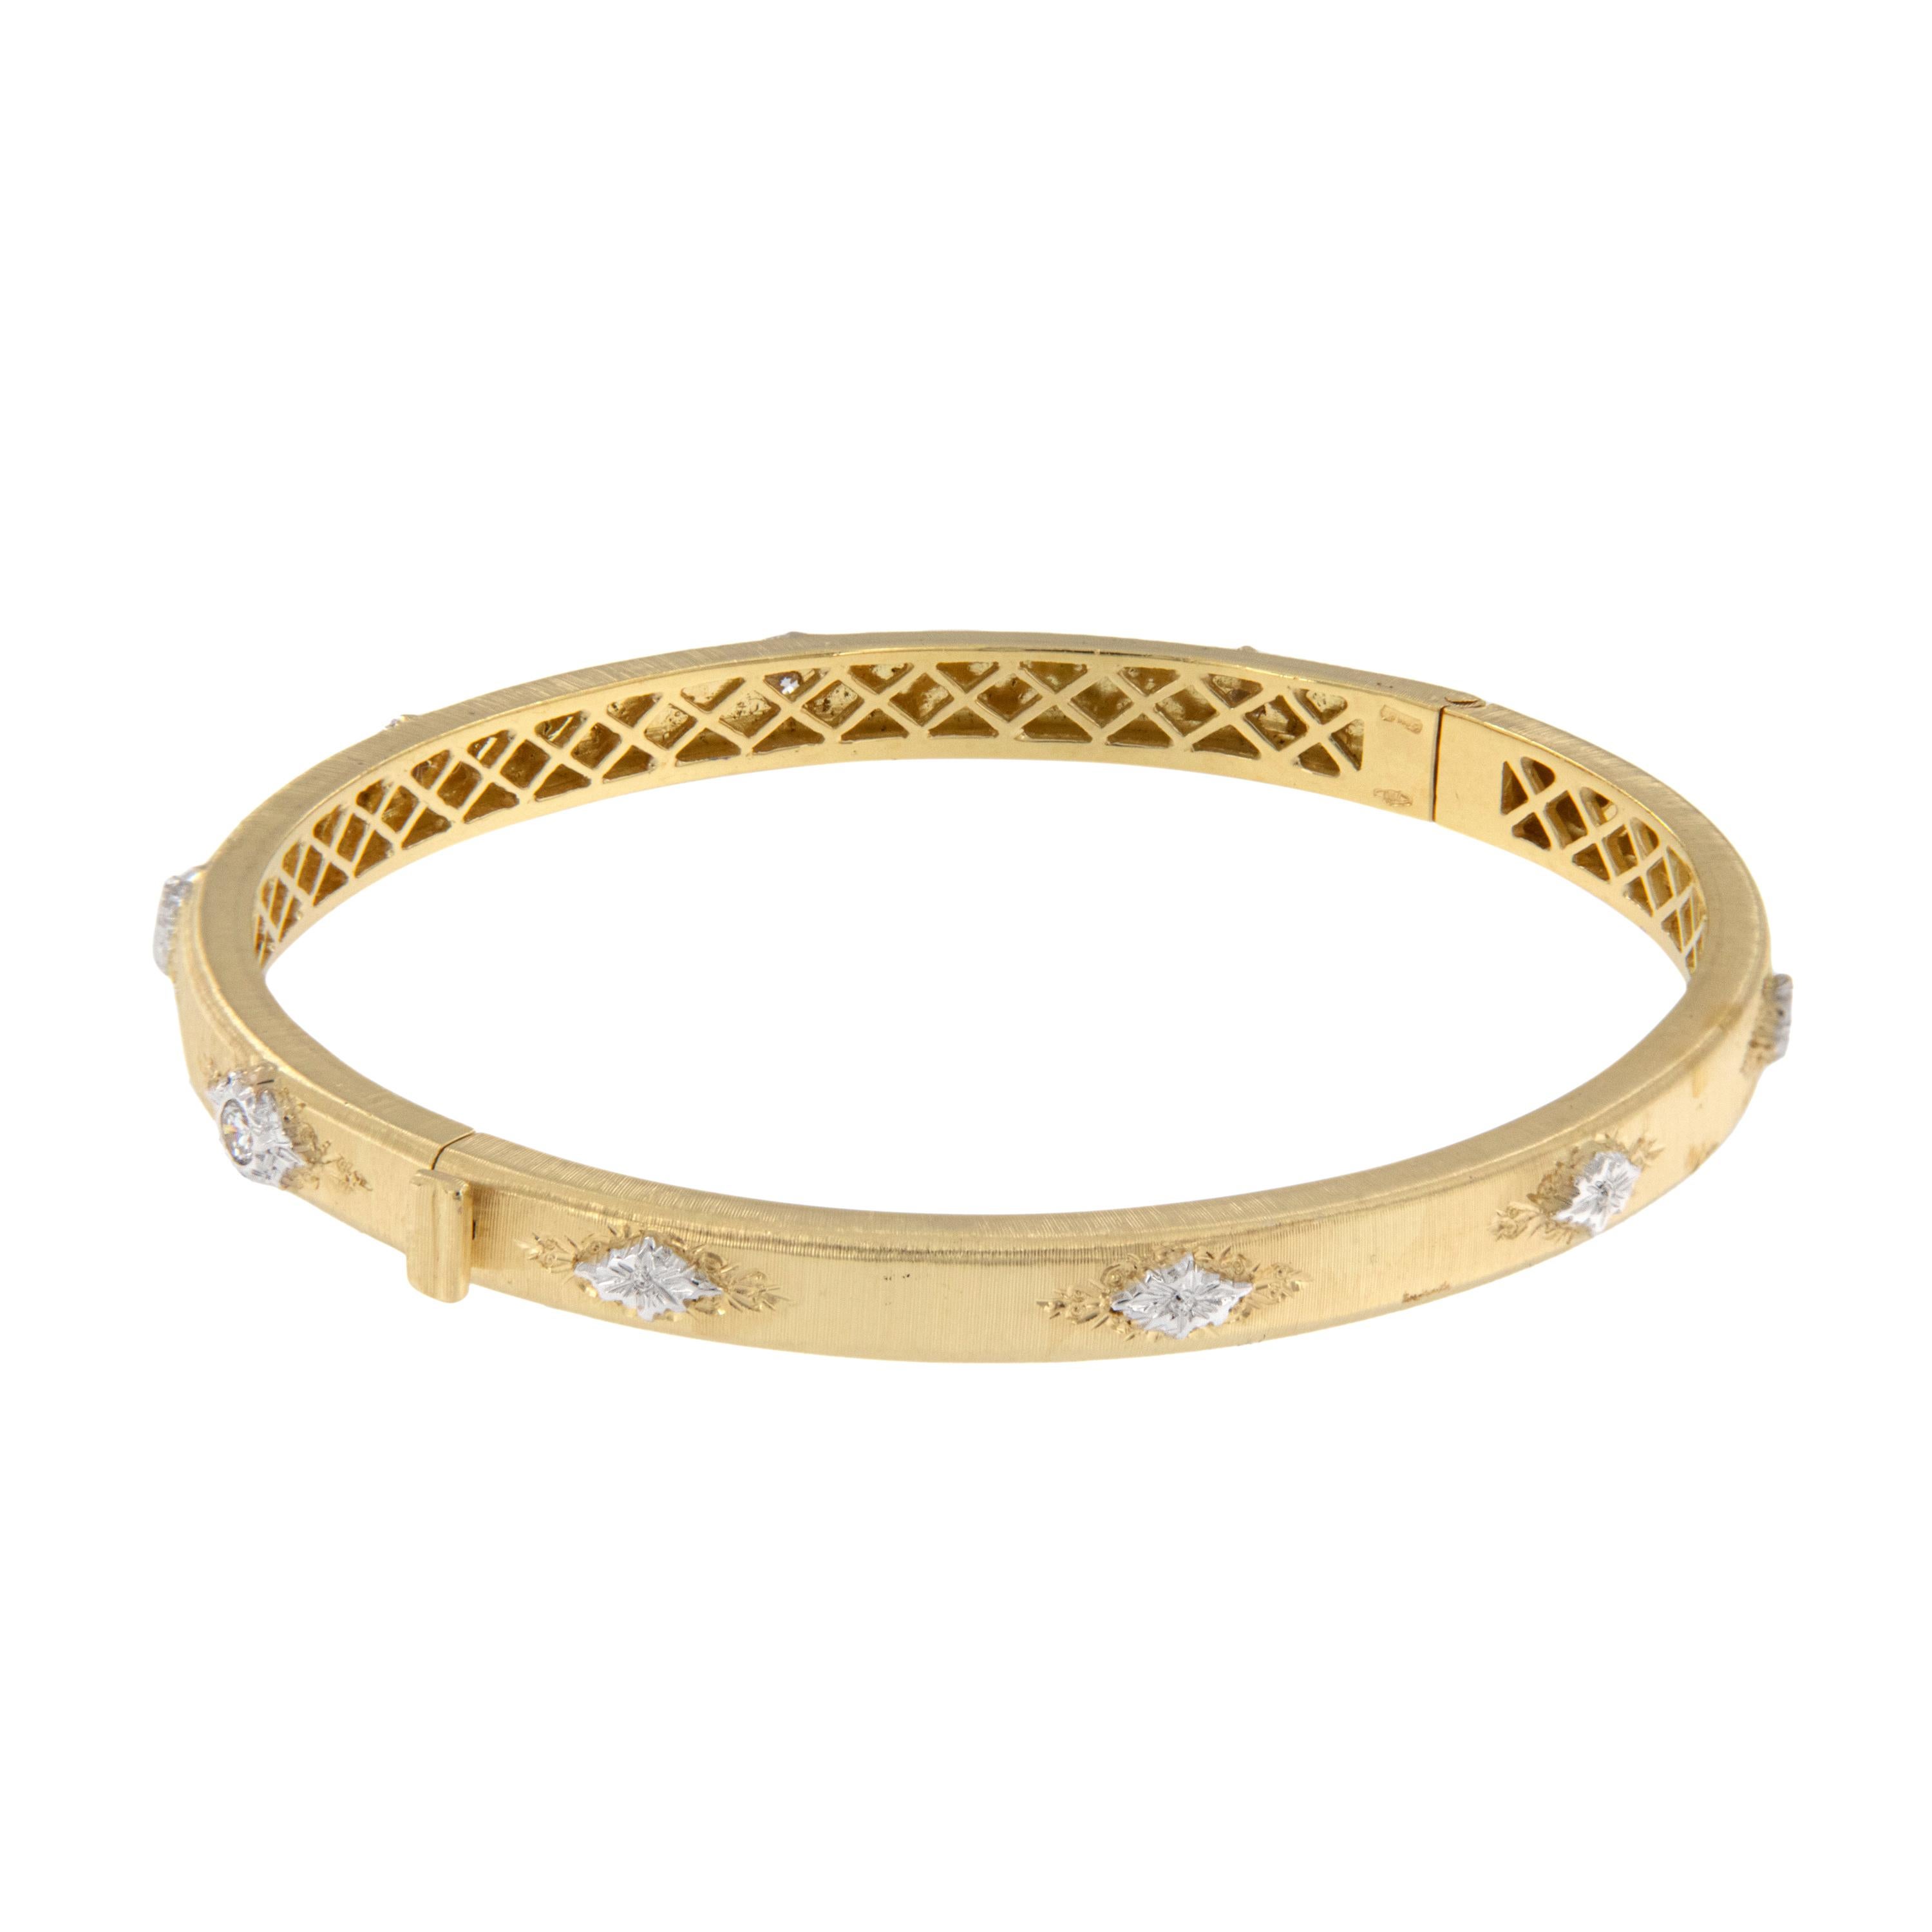 Personne ne le fait comme les Italiens ! Ce bracelet bangle en or jaune 18 carats a été fabriqué en Italie et est rehaussé de 6 diamants RBC = 0,35 ctw dans des chatons en or blanc, avec la finition Florentine. Diamètre intérieur de 7 3/16